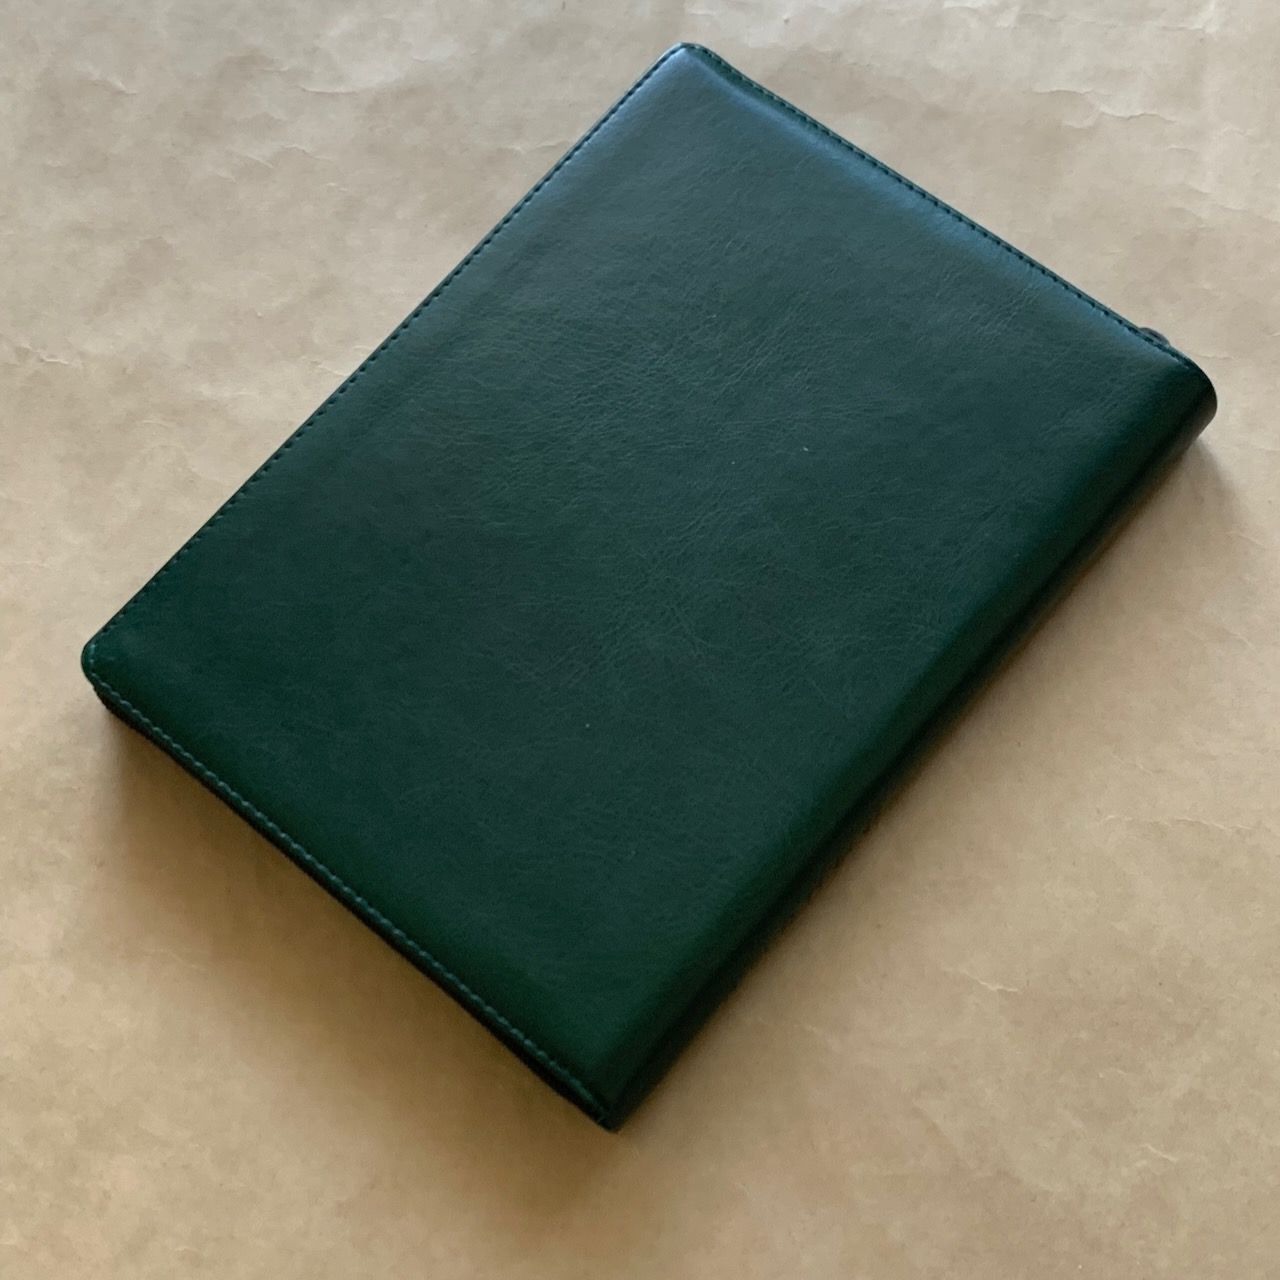 Библия 076z код E1, дизайн "термо рамка барокко", переплет из искусственной кожи на молнии, цвет темно-зеленый металлик, размер 180x243 мм